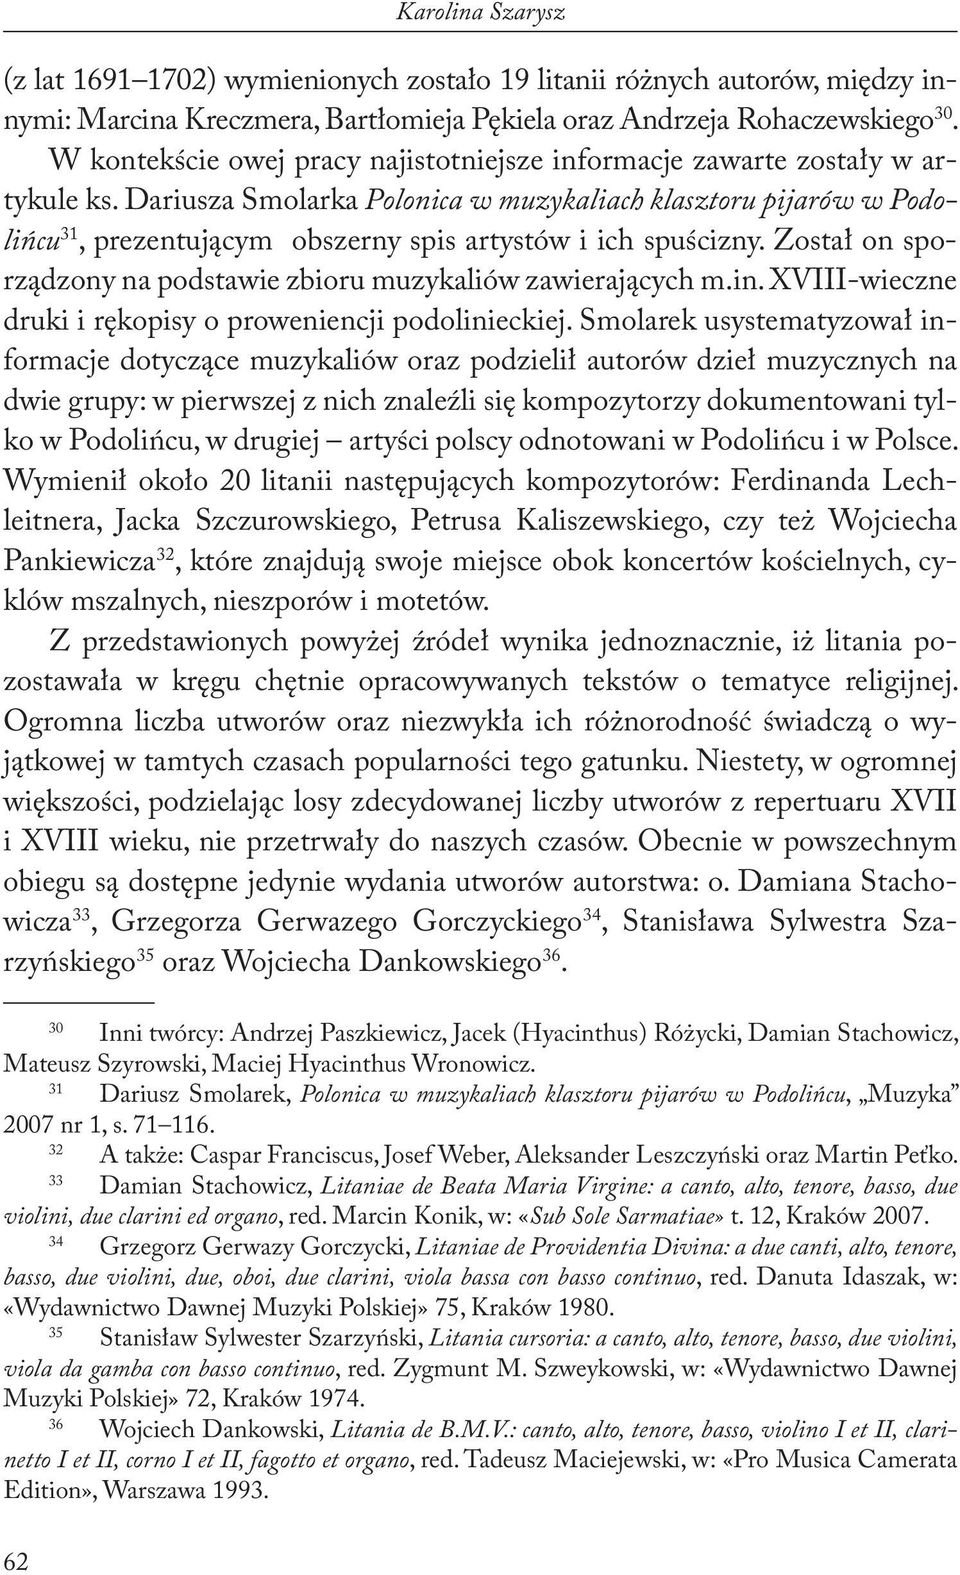 Dariusza Smolarka Polonica w muzykaliach klasztoru pijarów w Podolińcu 31, prezentującym obszerny spis artystów i ich spuścizny. Został on sporządzony na podstawie zbioru muzykaliów zawierających m.